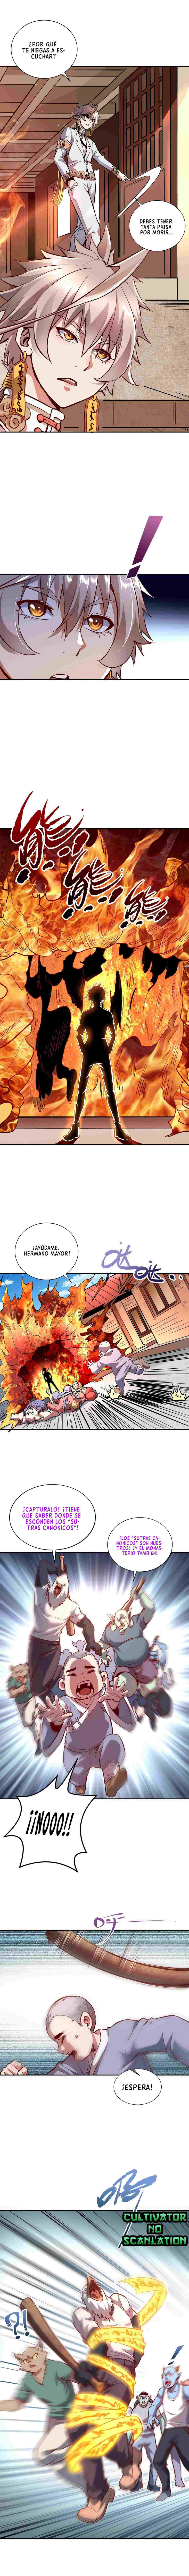 Manga Yo, Desafío a mi Ascensión Chapter 2 image number 21